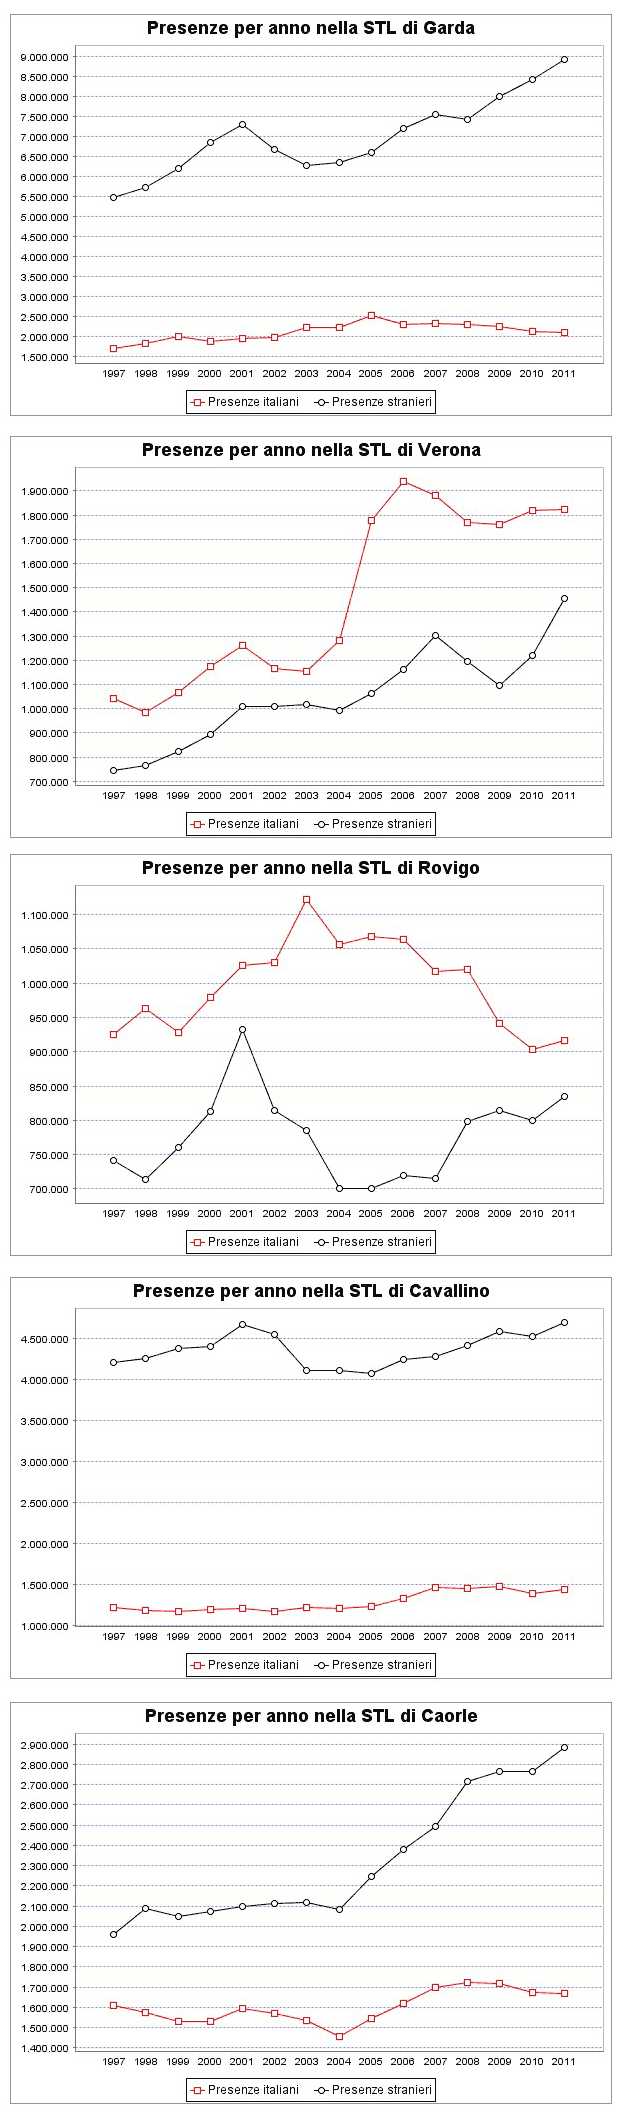 presenze turistiche negli STL della regione Veneto - 003